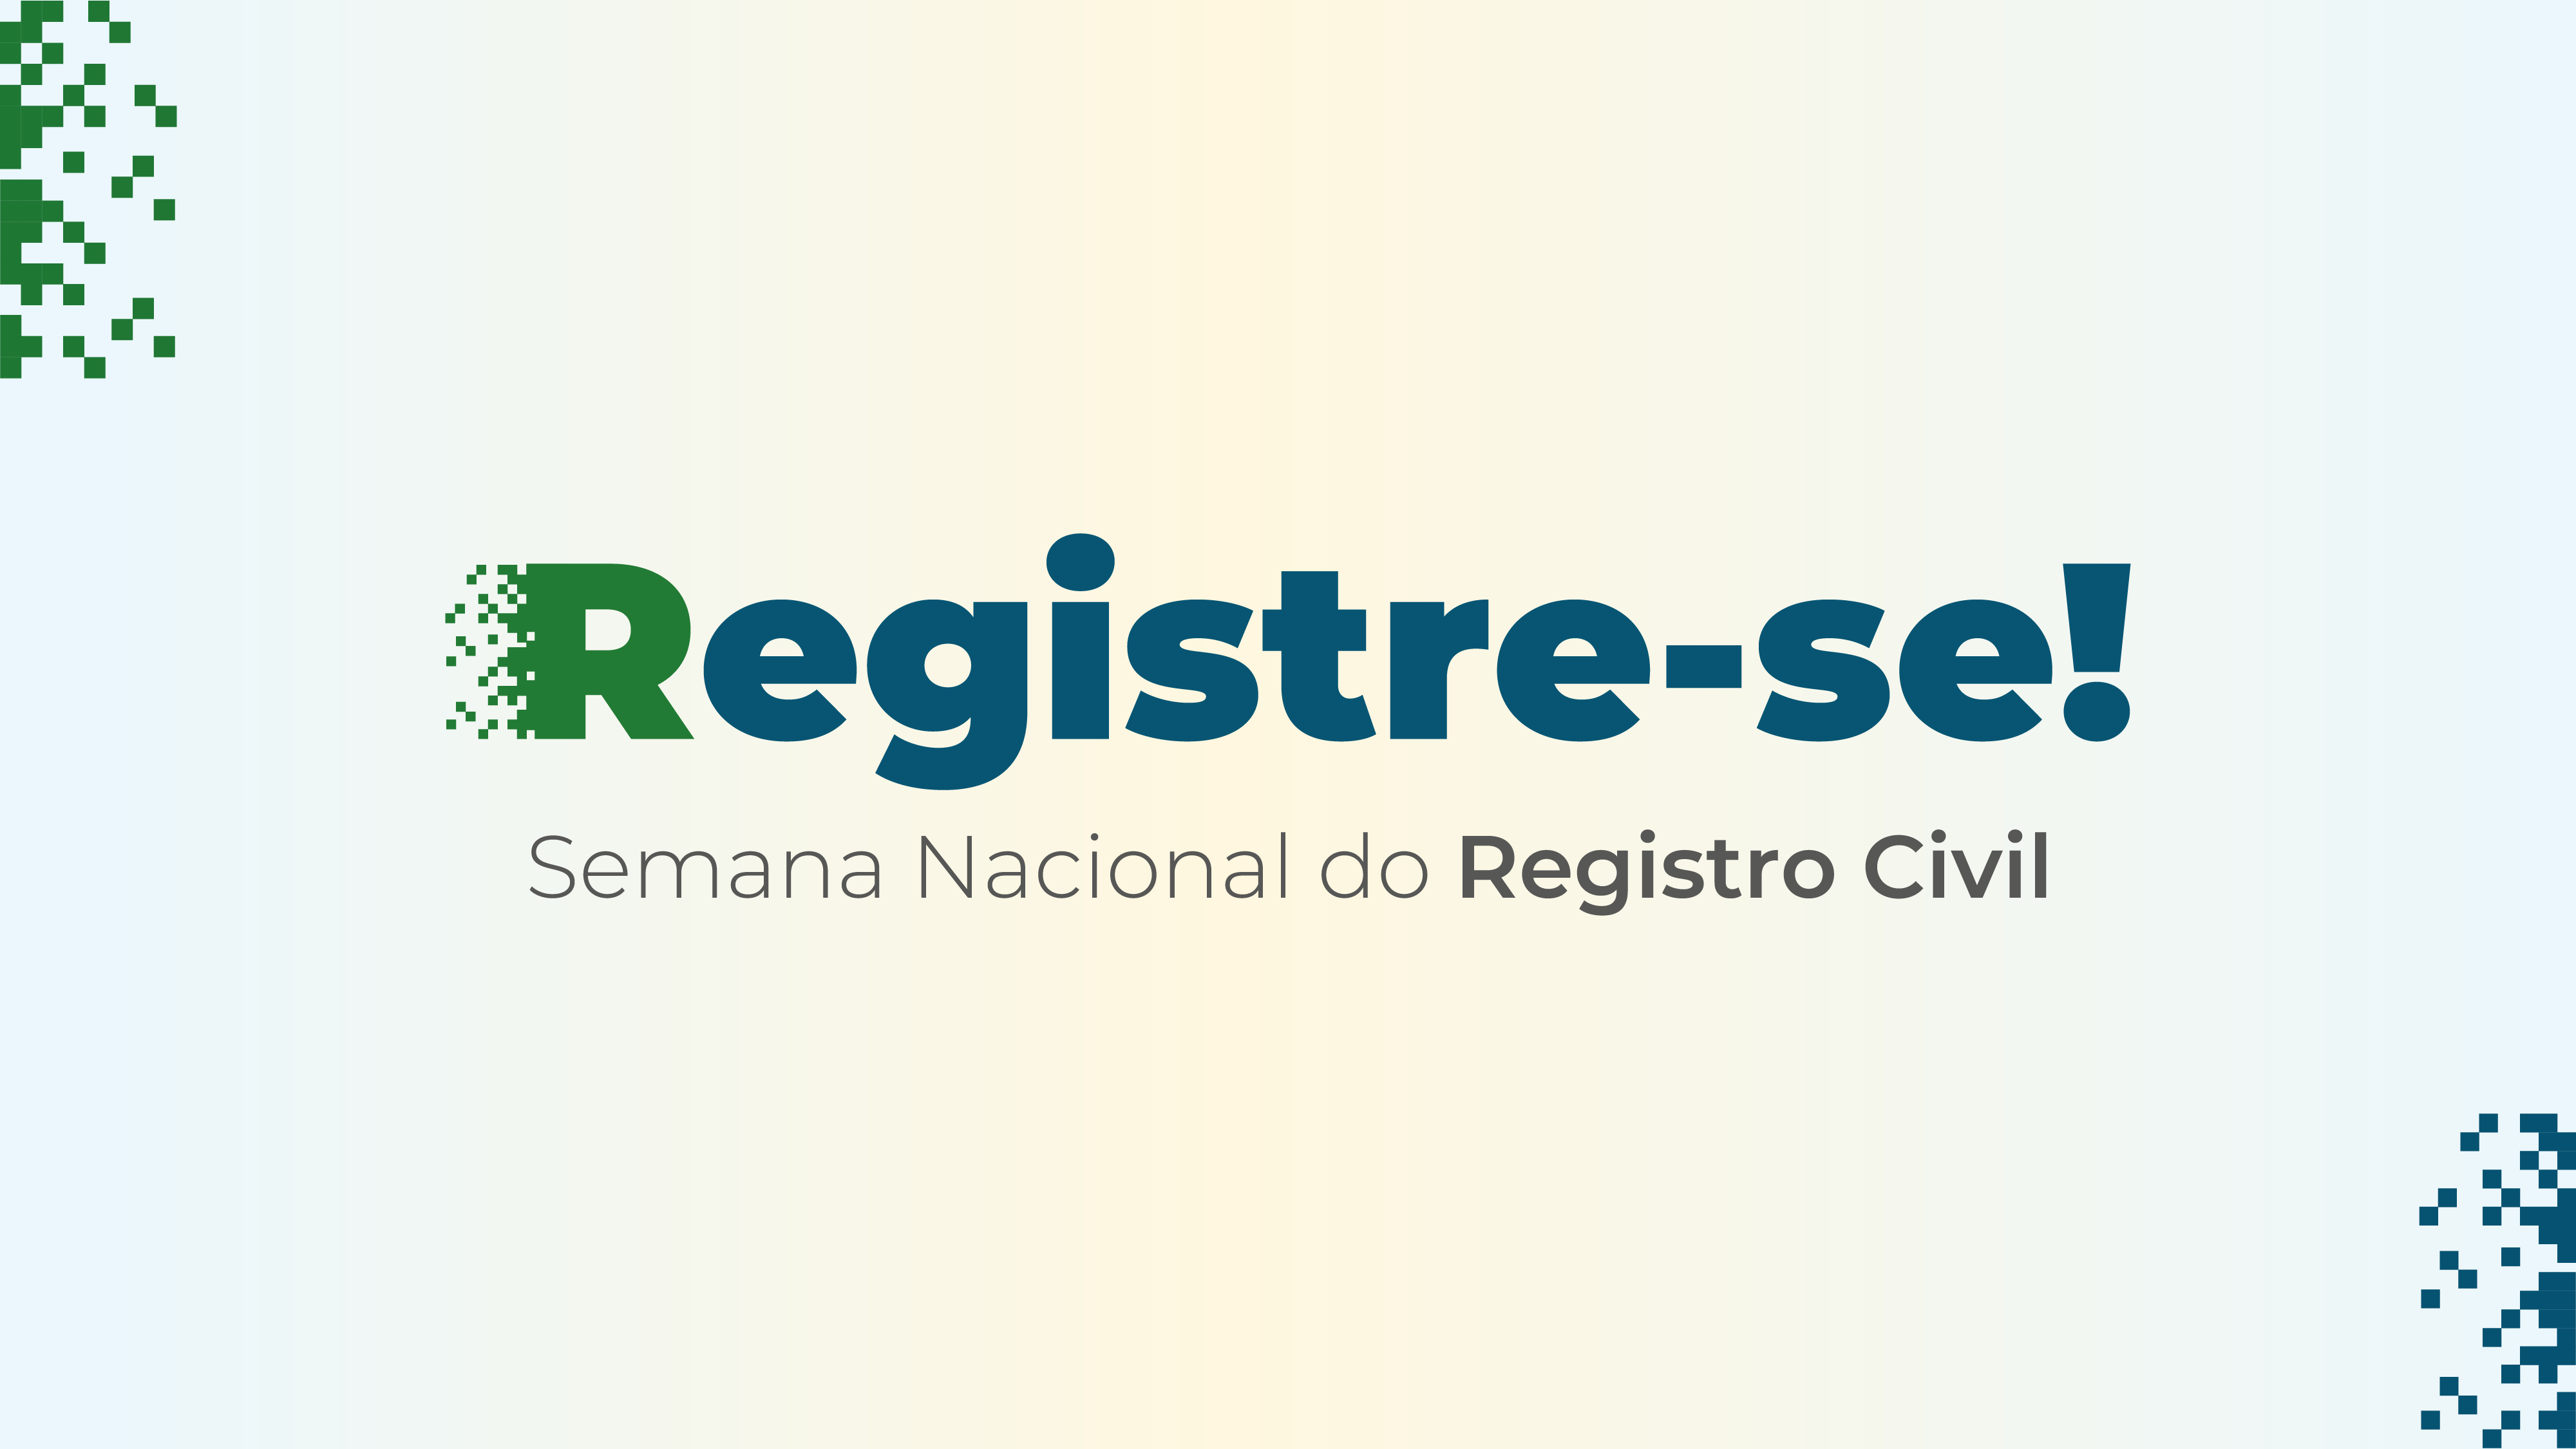 Imagem ilustrativa de divulgação da Semana Nacional do Registro Civil - Registre-se!